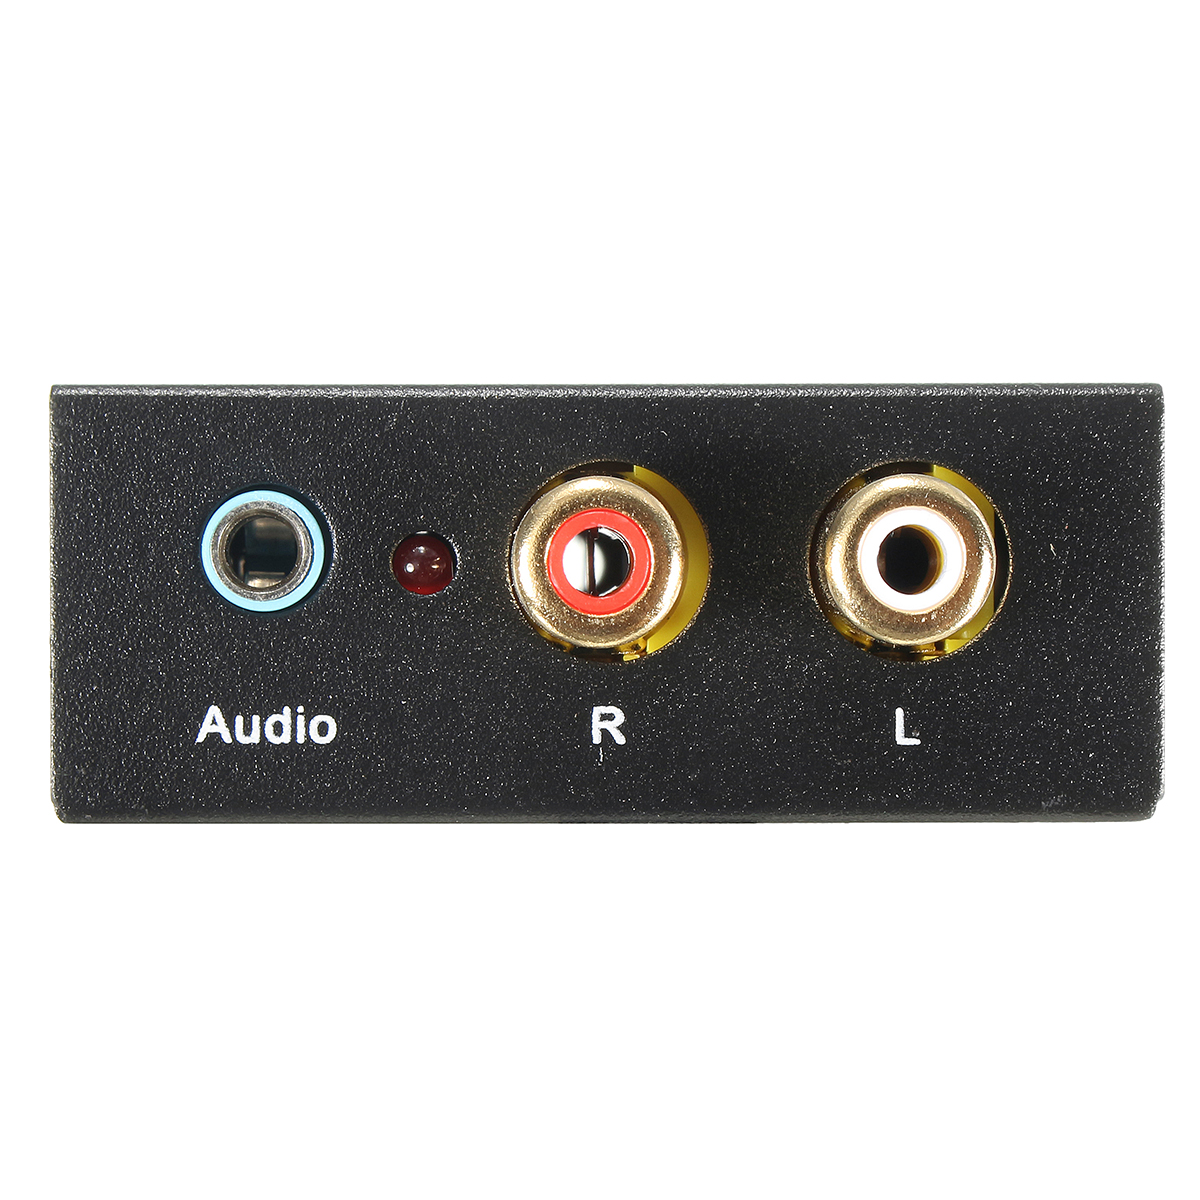 Spdif коаксиальный. Аудио s/PDIF коаксиальный на телевизоре. Коаксиал аудио SPDIF. RCA (S/PDIF коаксиальный). Кабель Optical Audio out RCA 5.1.